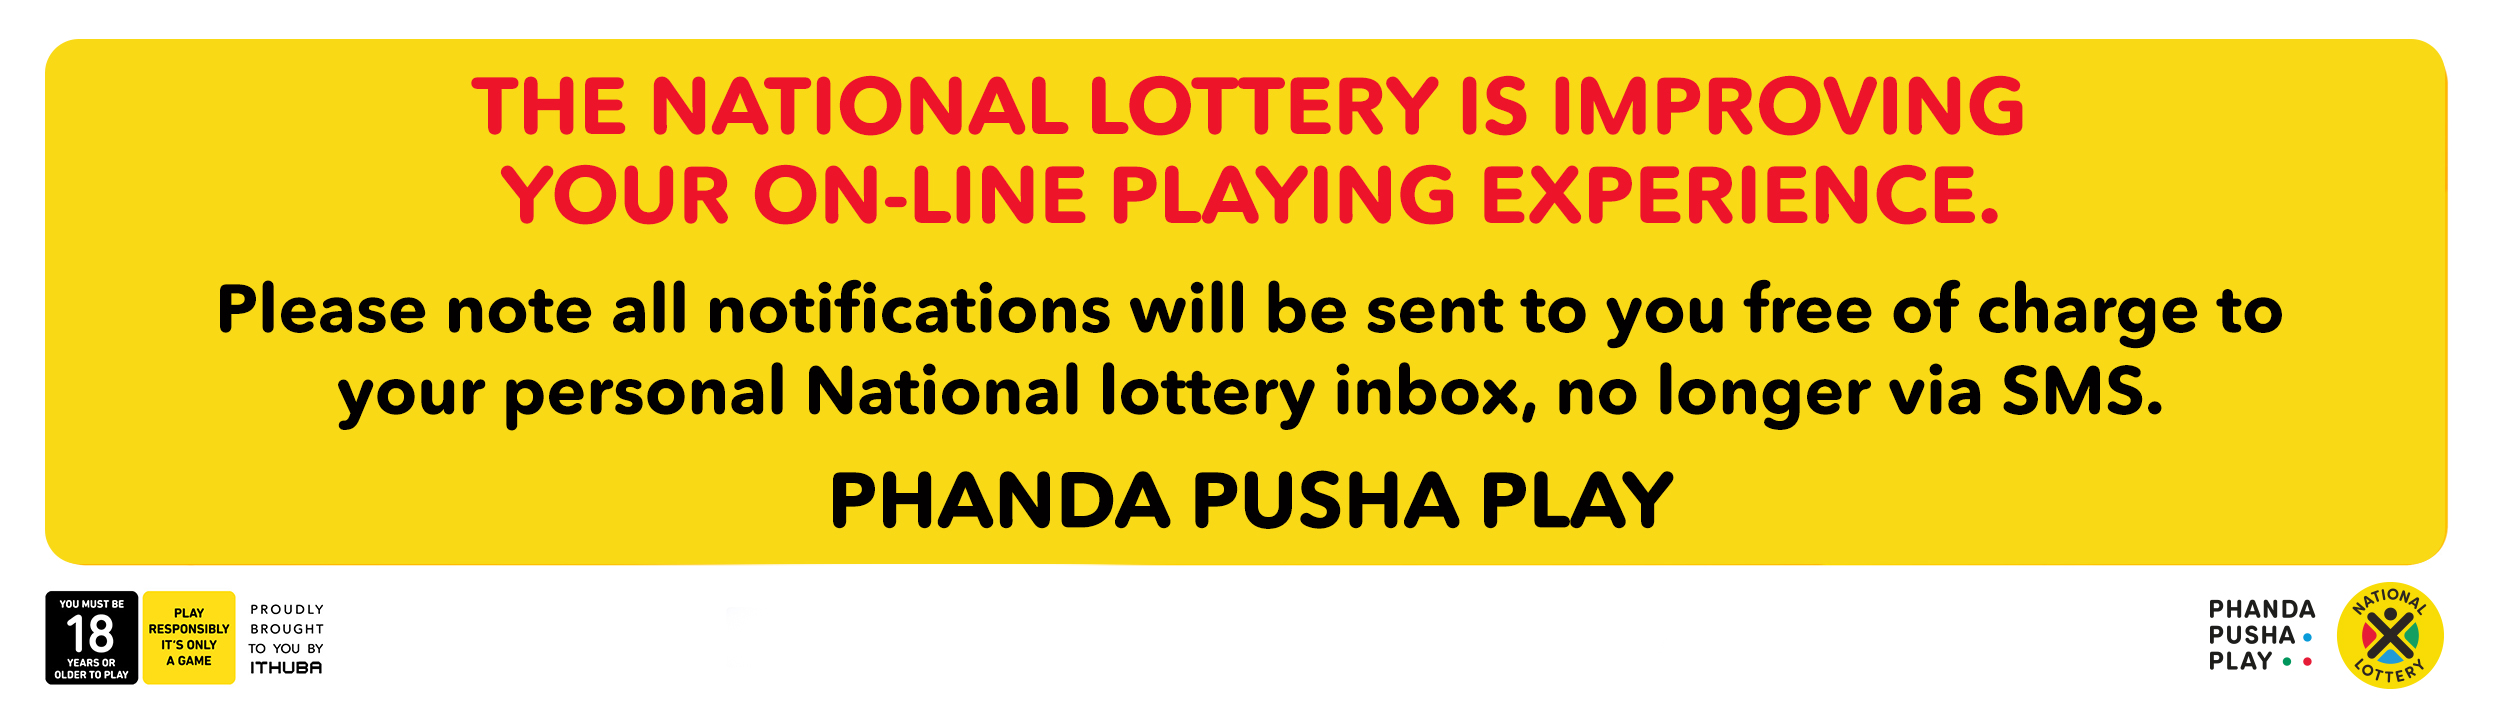 lotto phanda phusha play